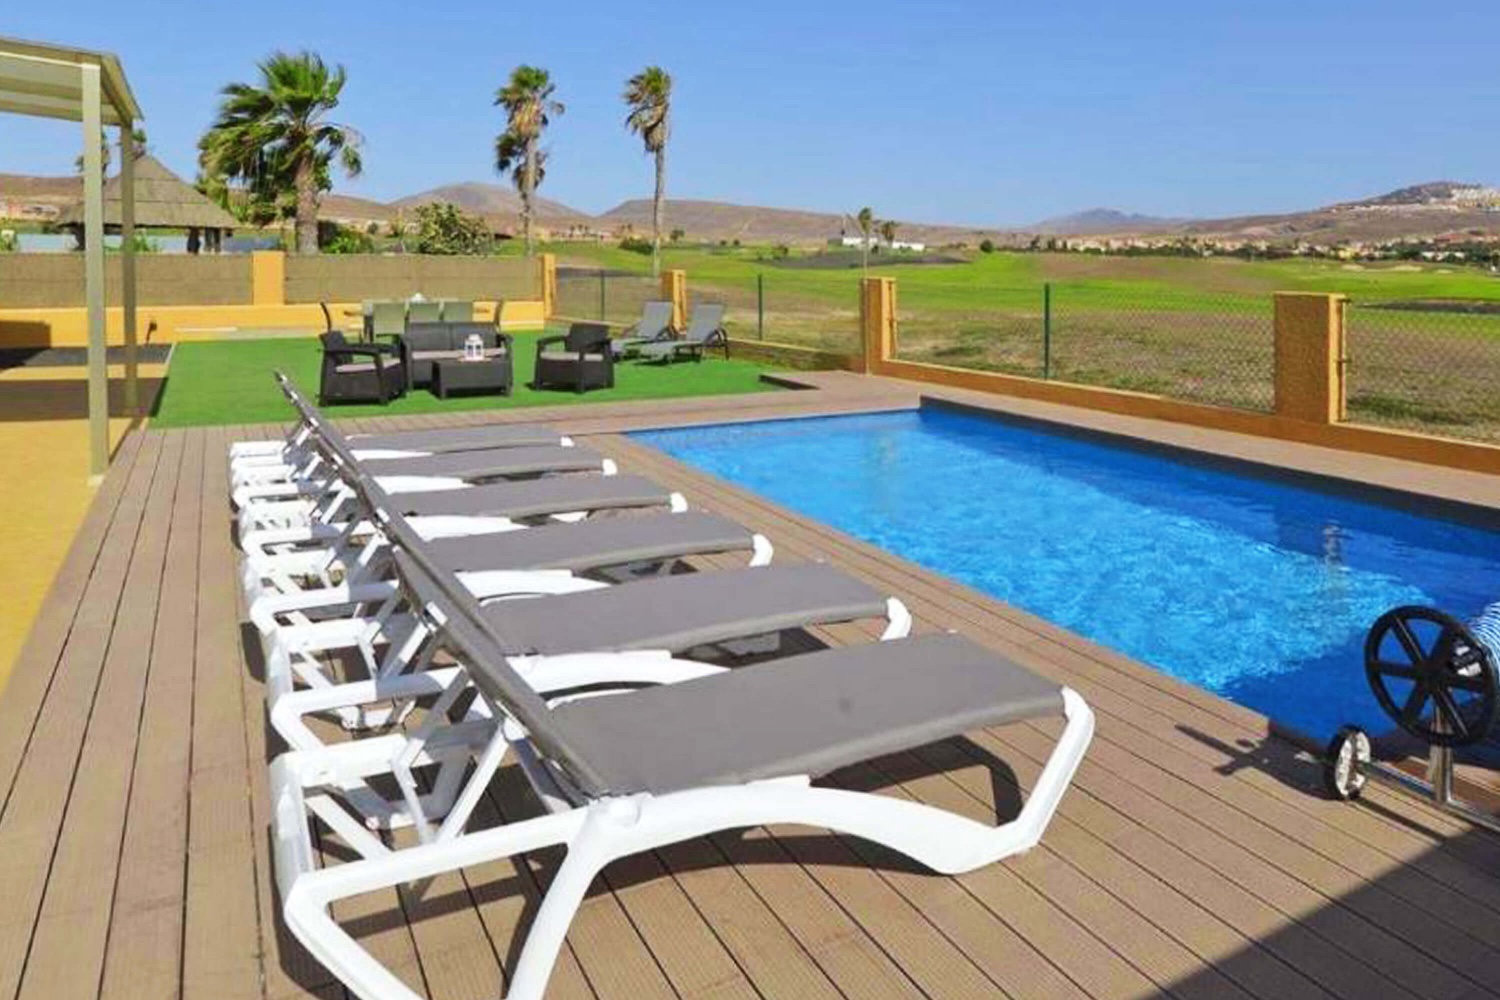 Ferienhaus mit Privatpool für einen entspannten Urlaub mit der Familie direkt am Golfplatz von Las Salinas